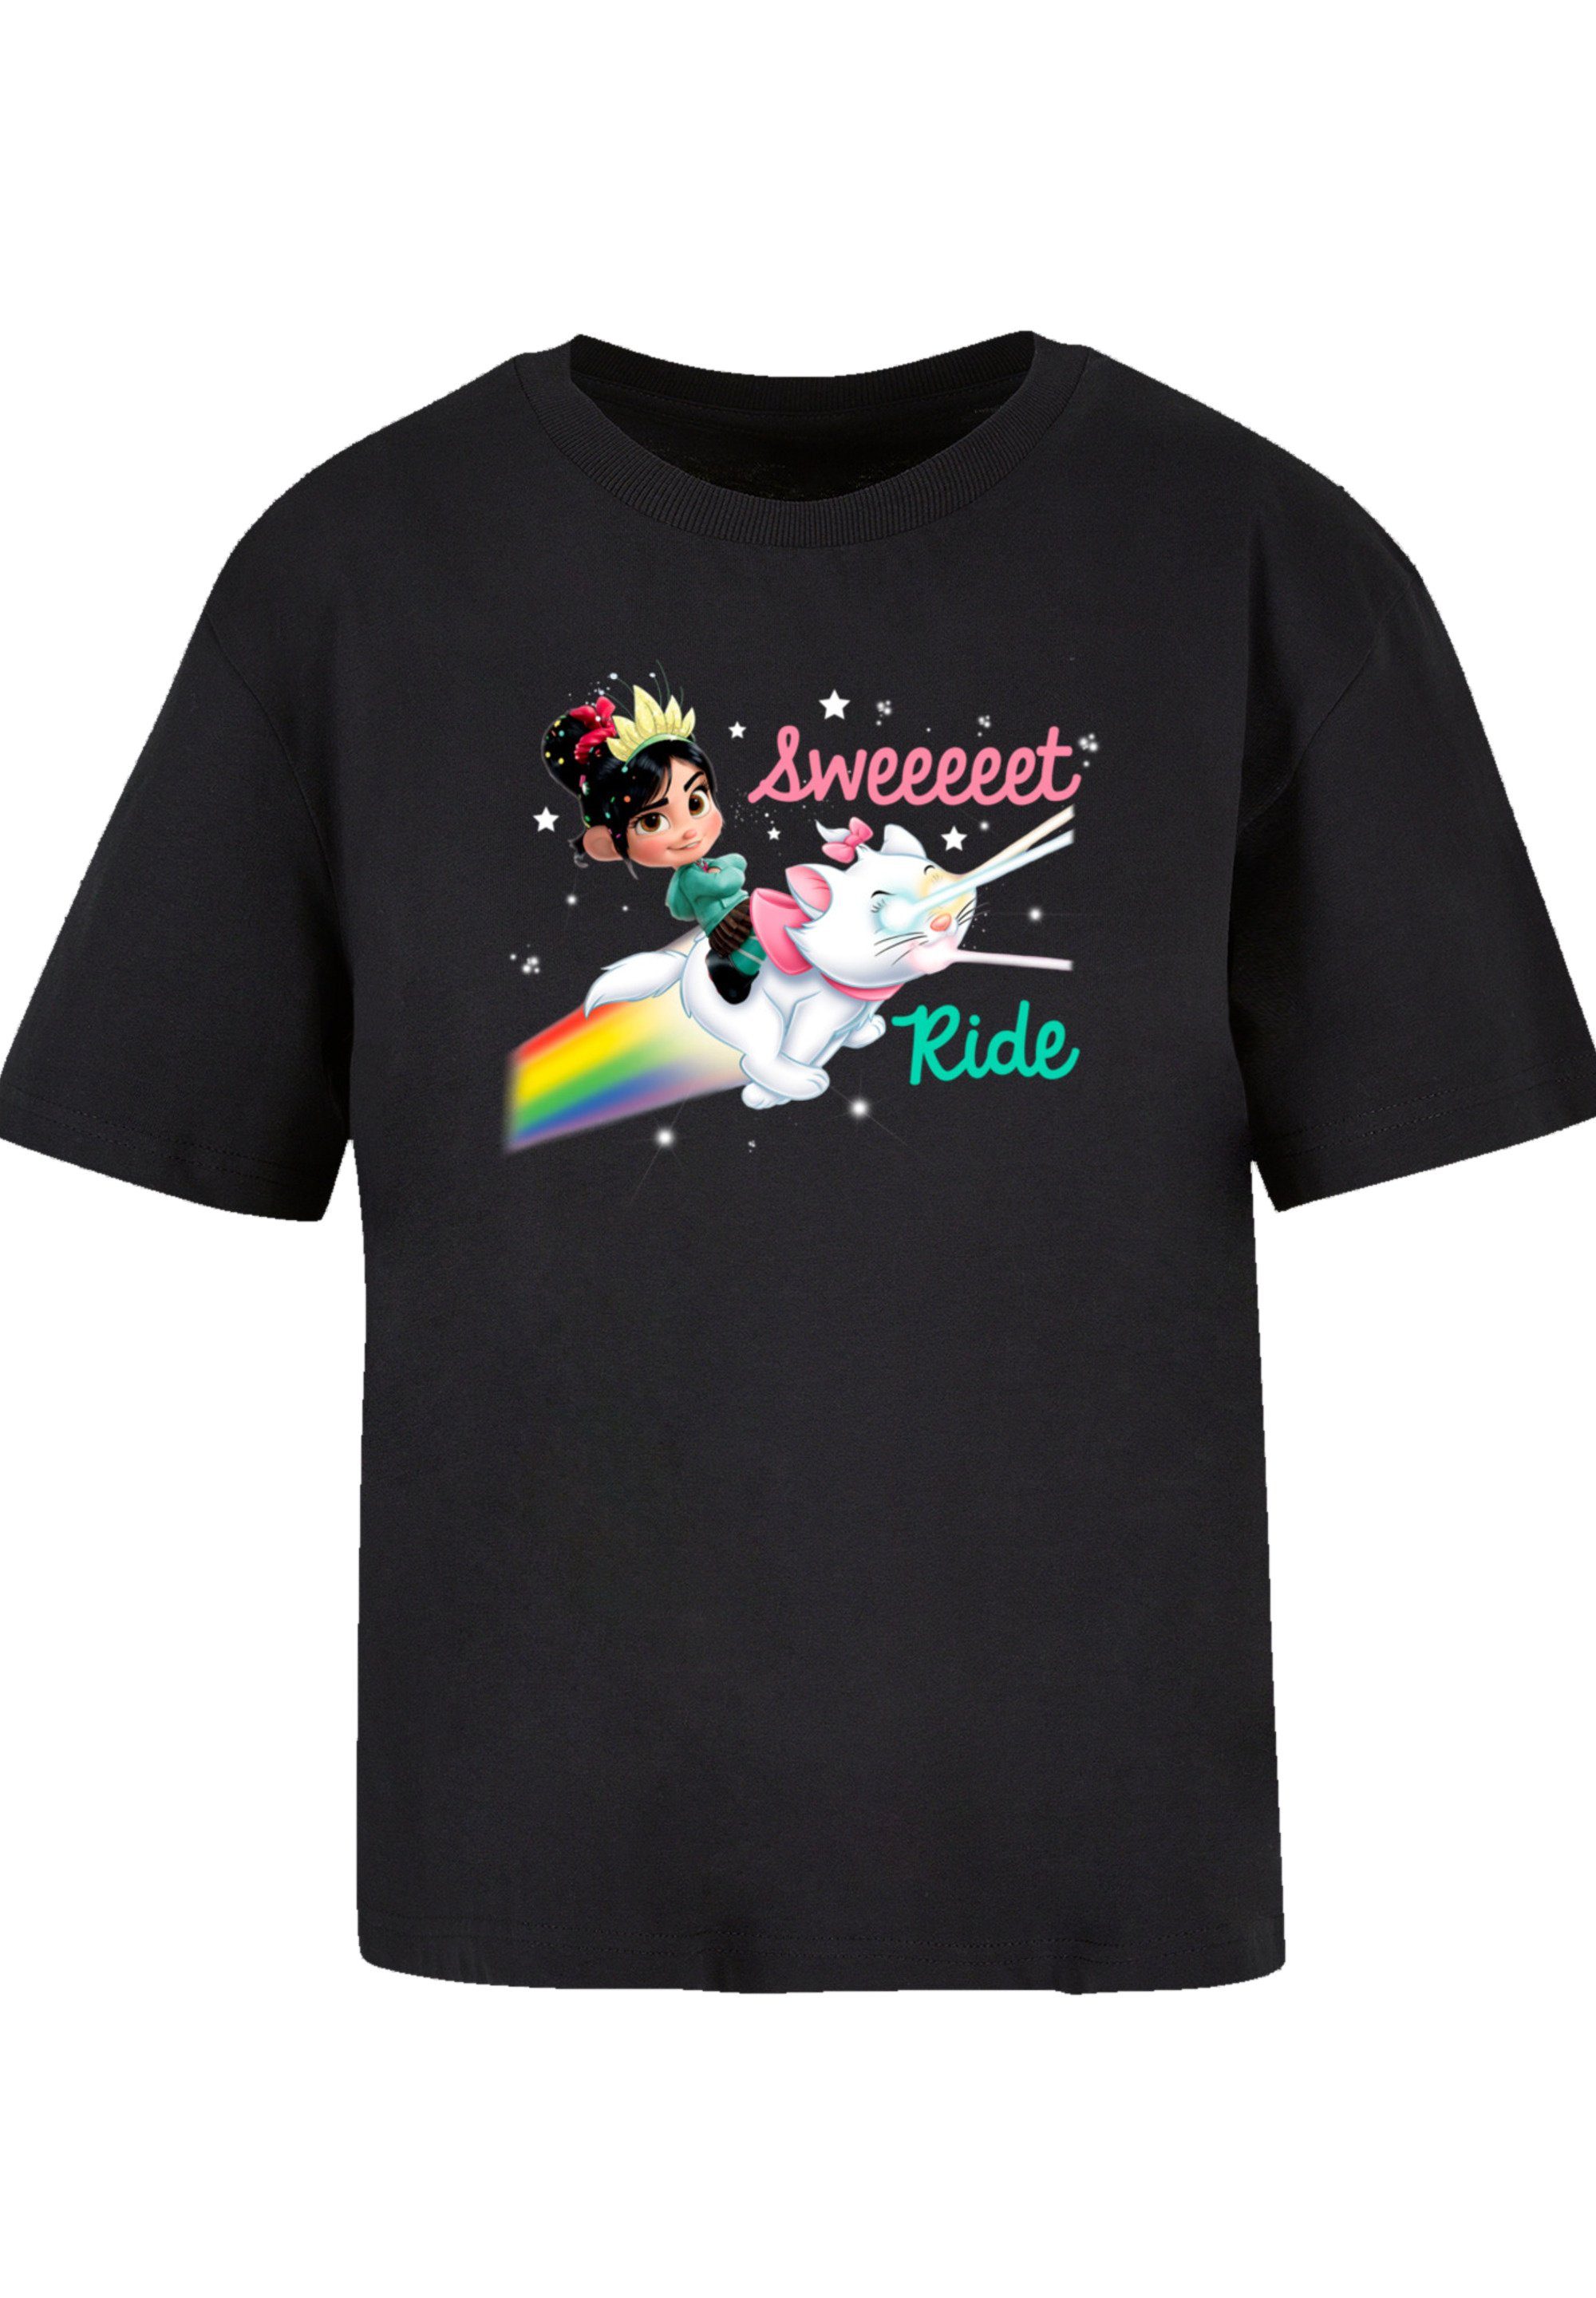 F4NT4STIC T-Shirt Disney Ralph reichts Sweet Ride Premium Qualität,  Komfortabel und vielseitig kombinierbar